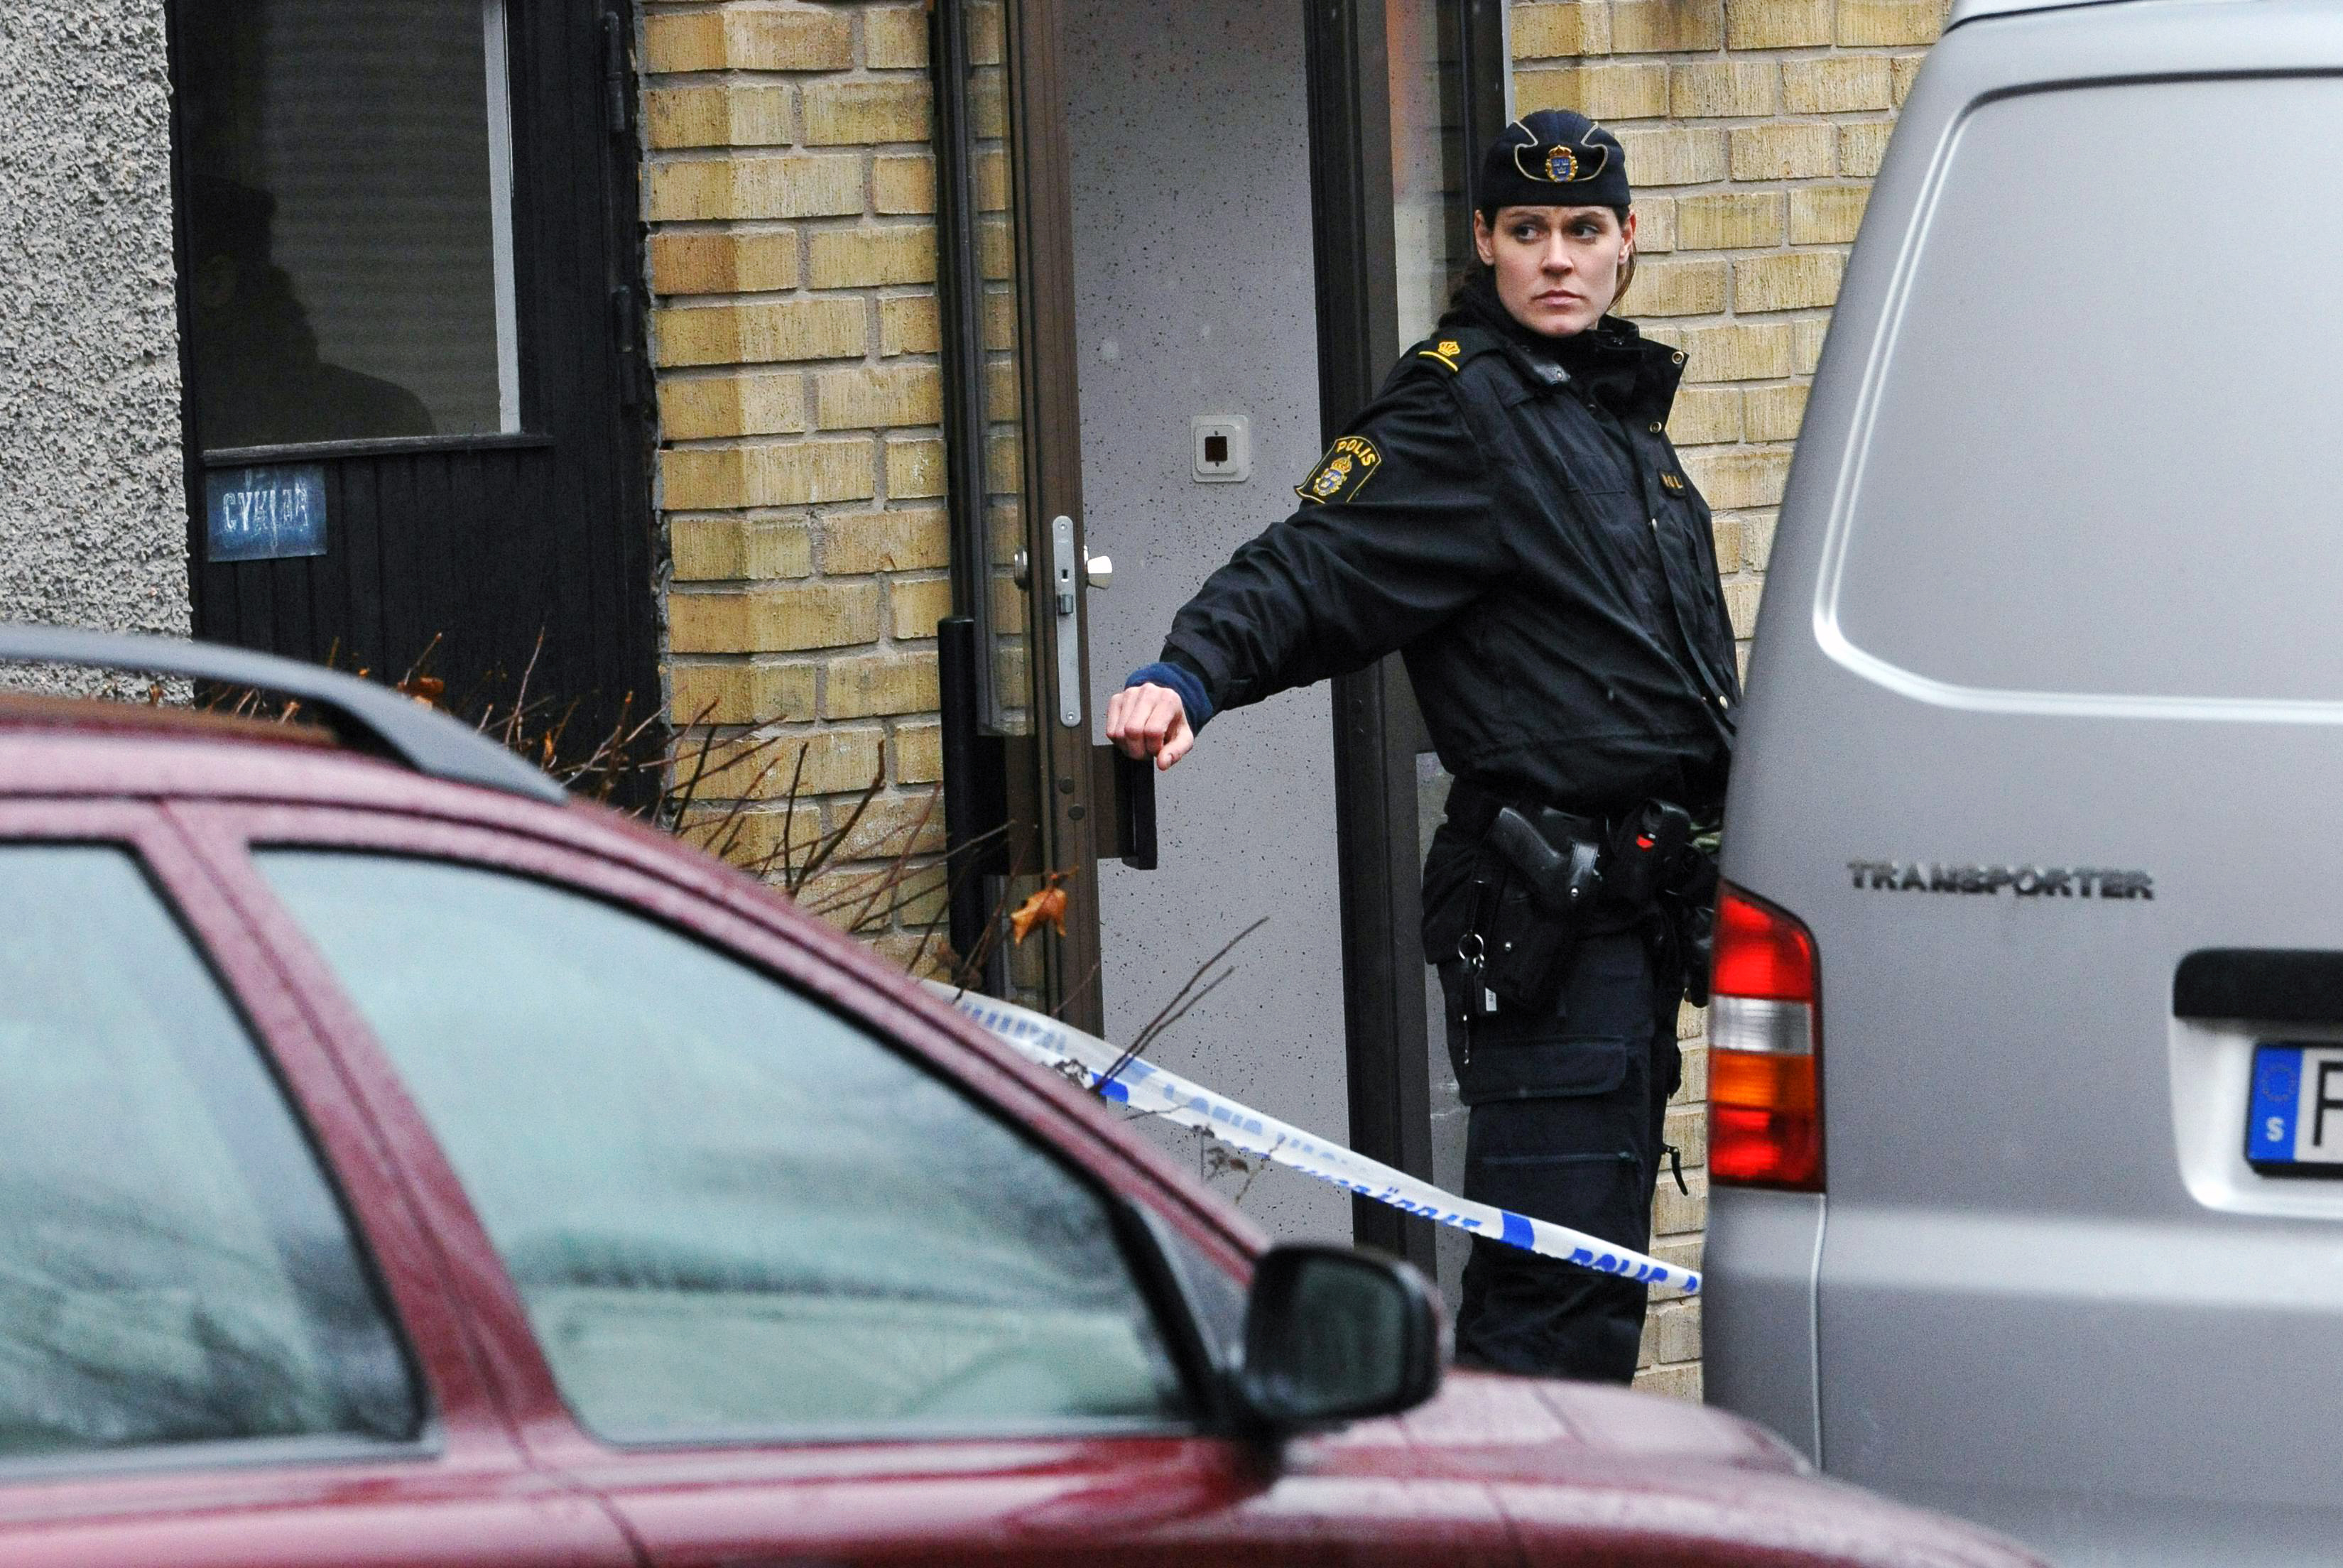 Det var på morgonen den 15 november som polisen hittade den mördade dottern i en trappuppgång i Katrineholm.